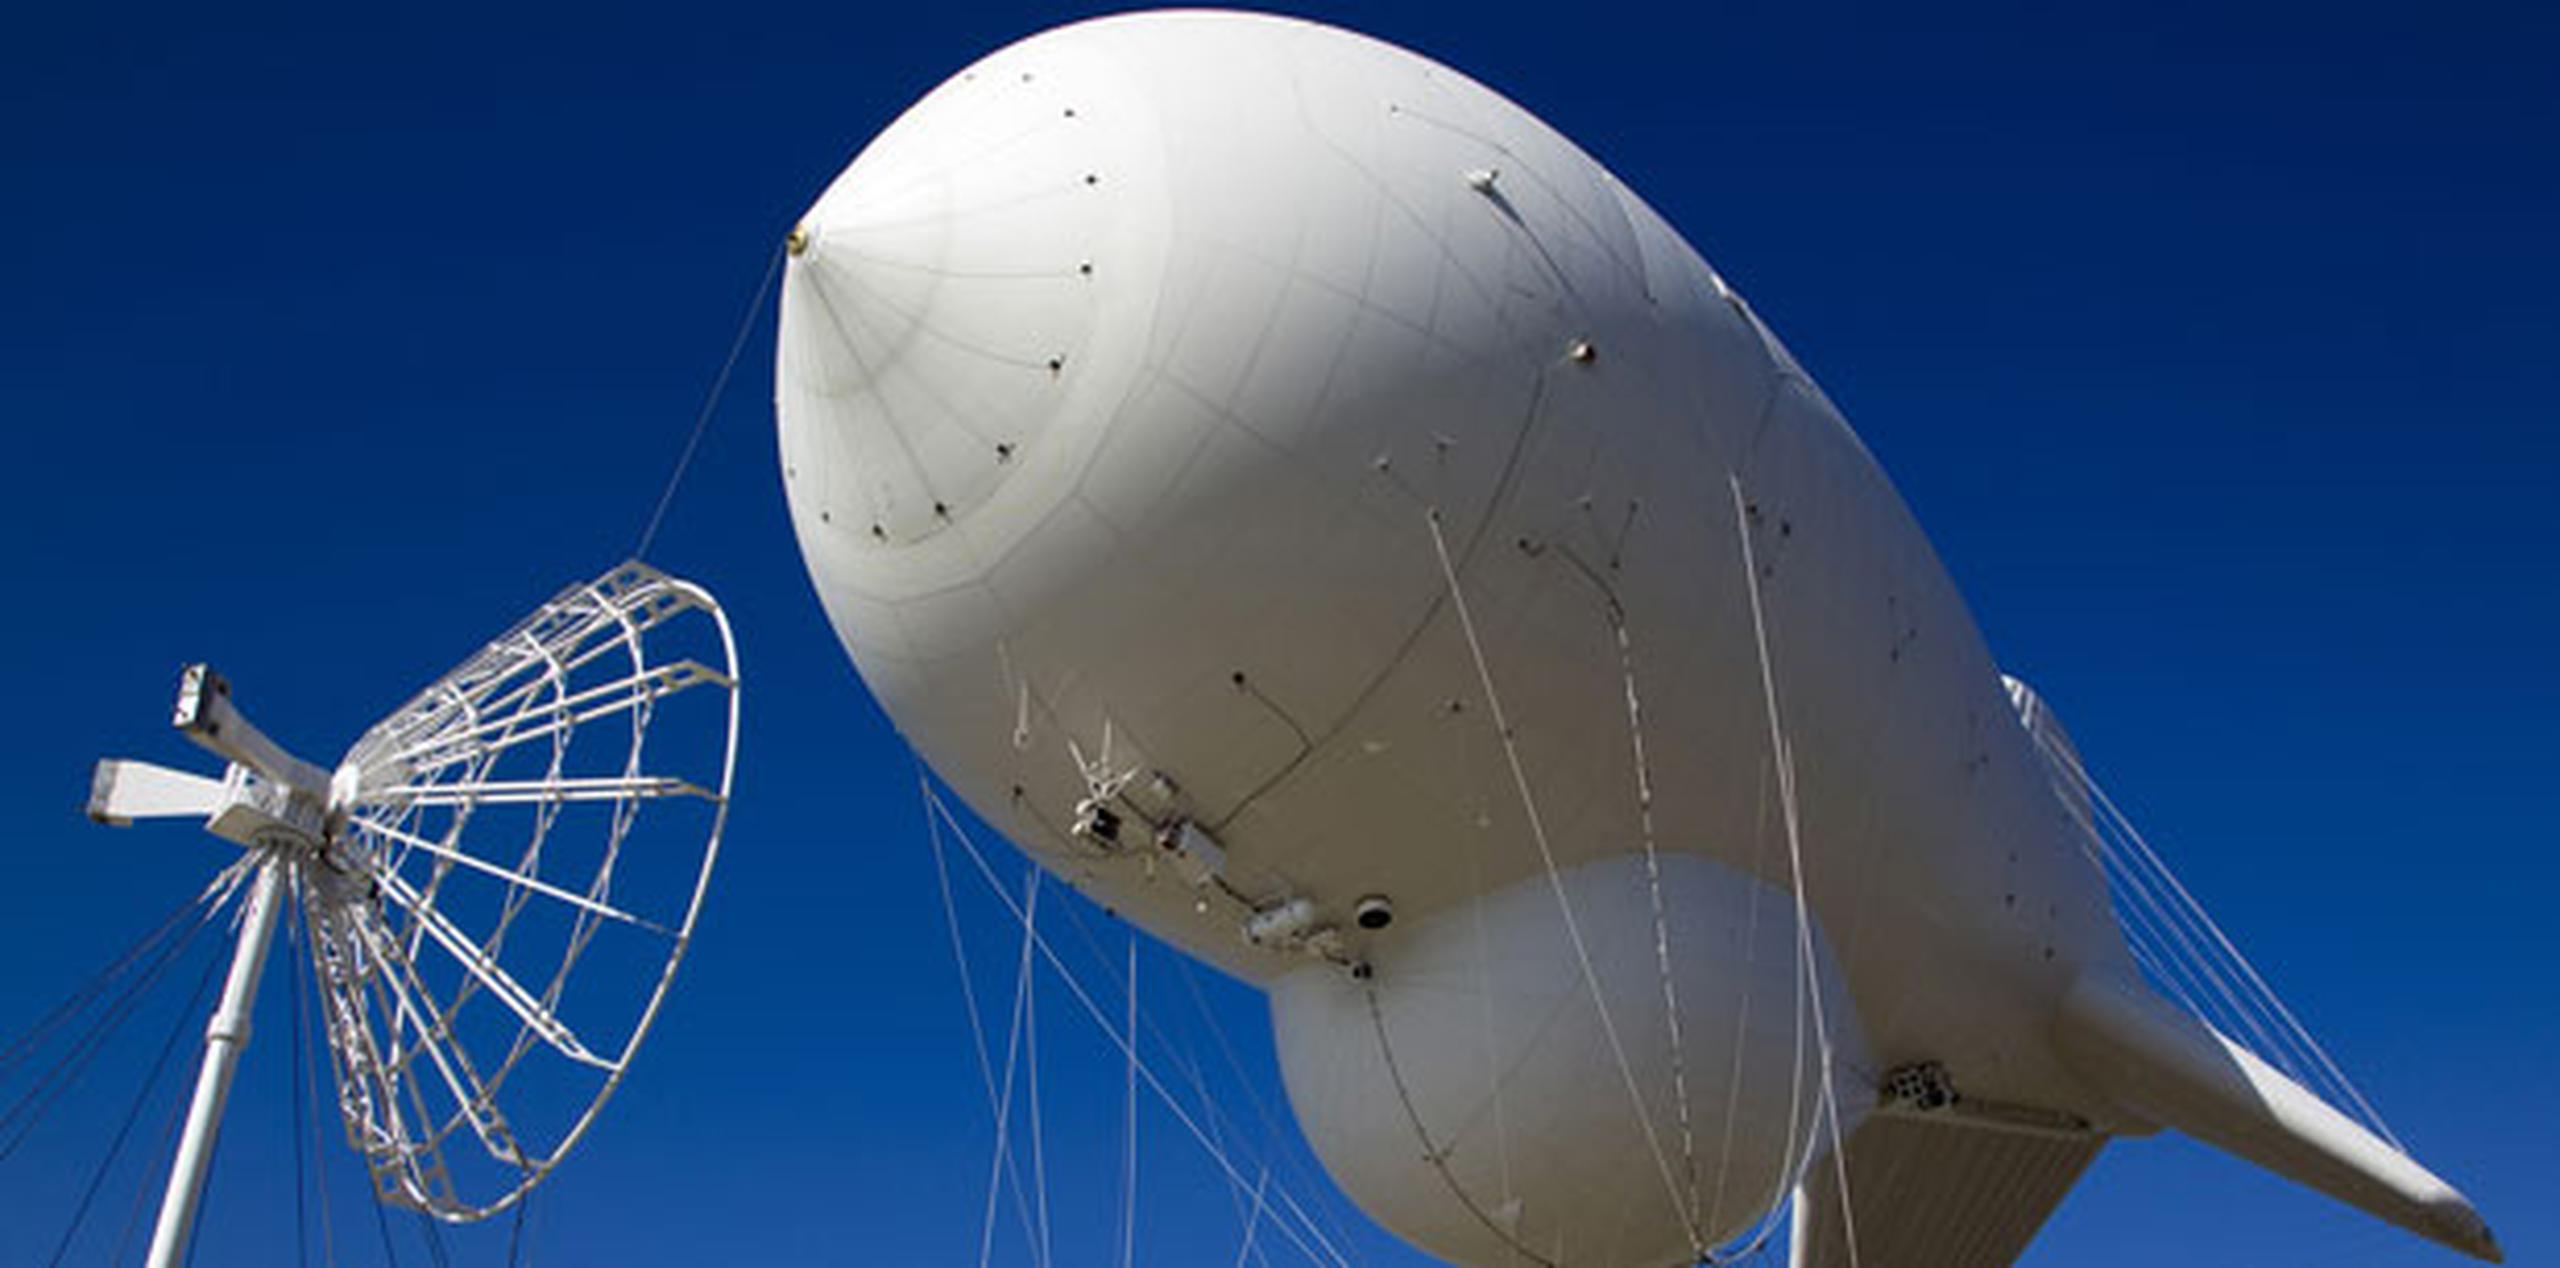 El radar es un recurso que las autoridades han utilizado para realizar operaciones aéreas y marítimas. (Suministrada)